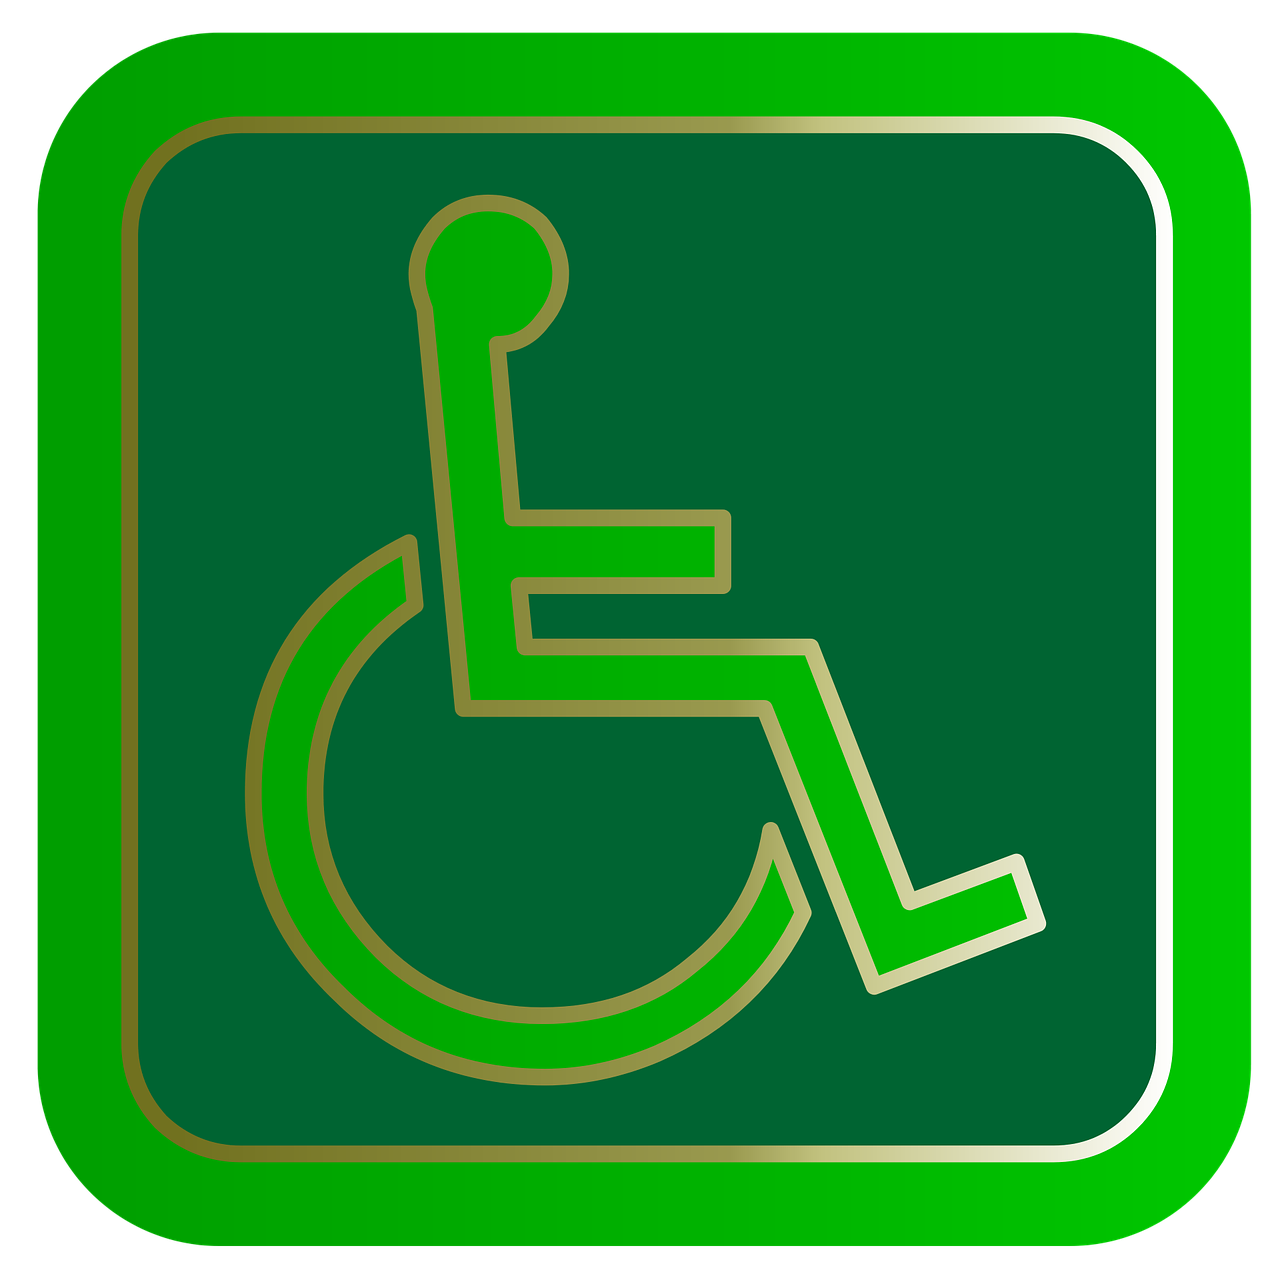 Den 3 (Ipse de Bruggen) beoordeling instelling gehandicaptenzorg verstandelijk gehandicapten